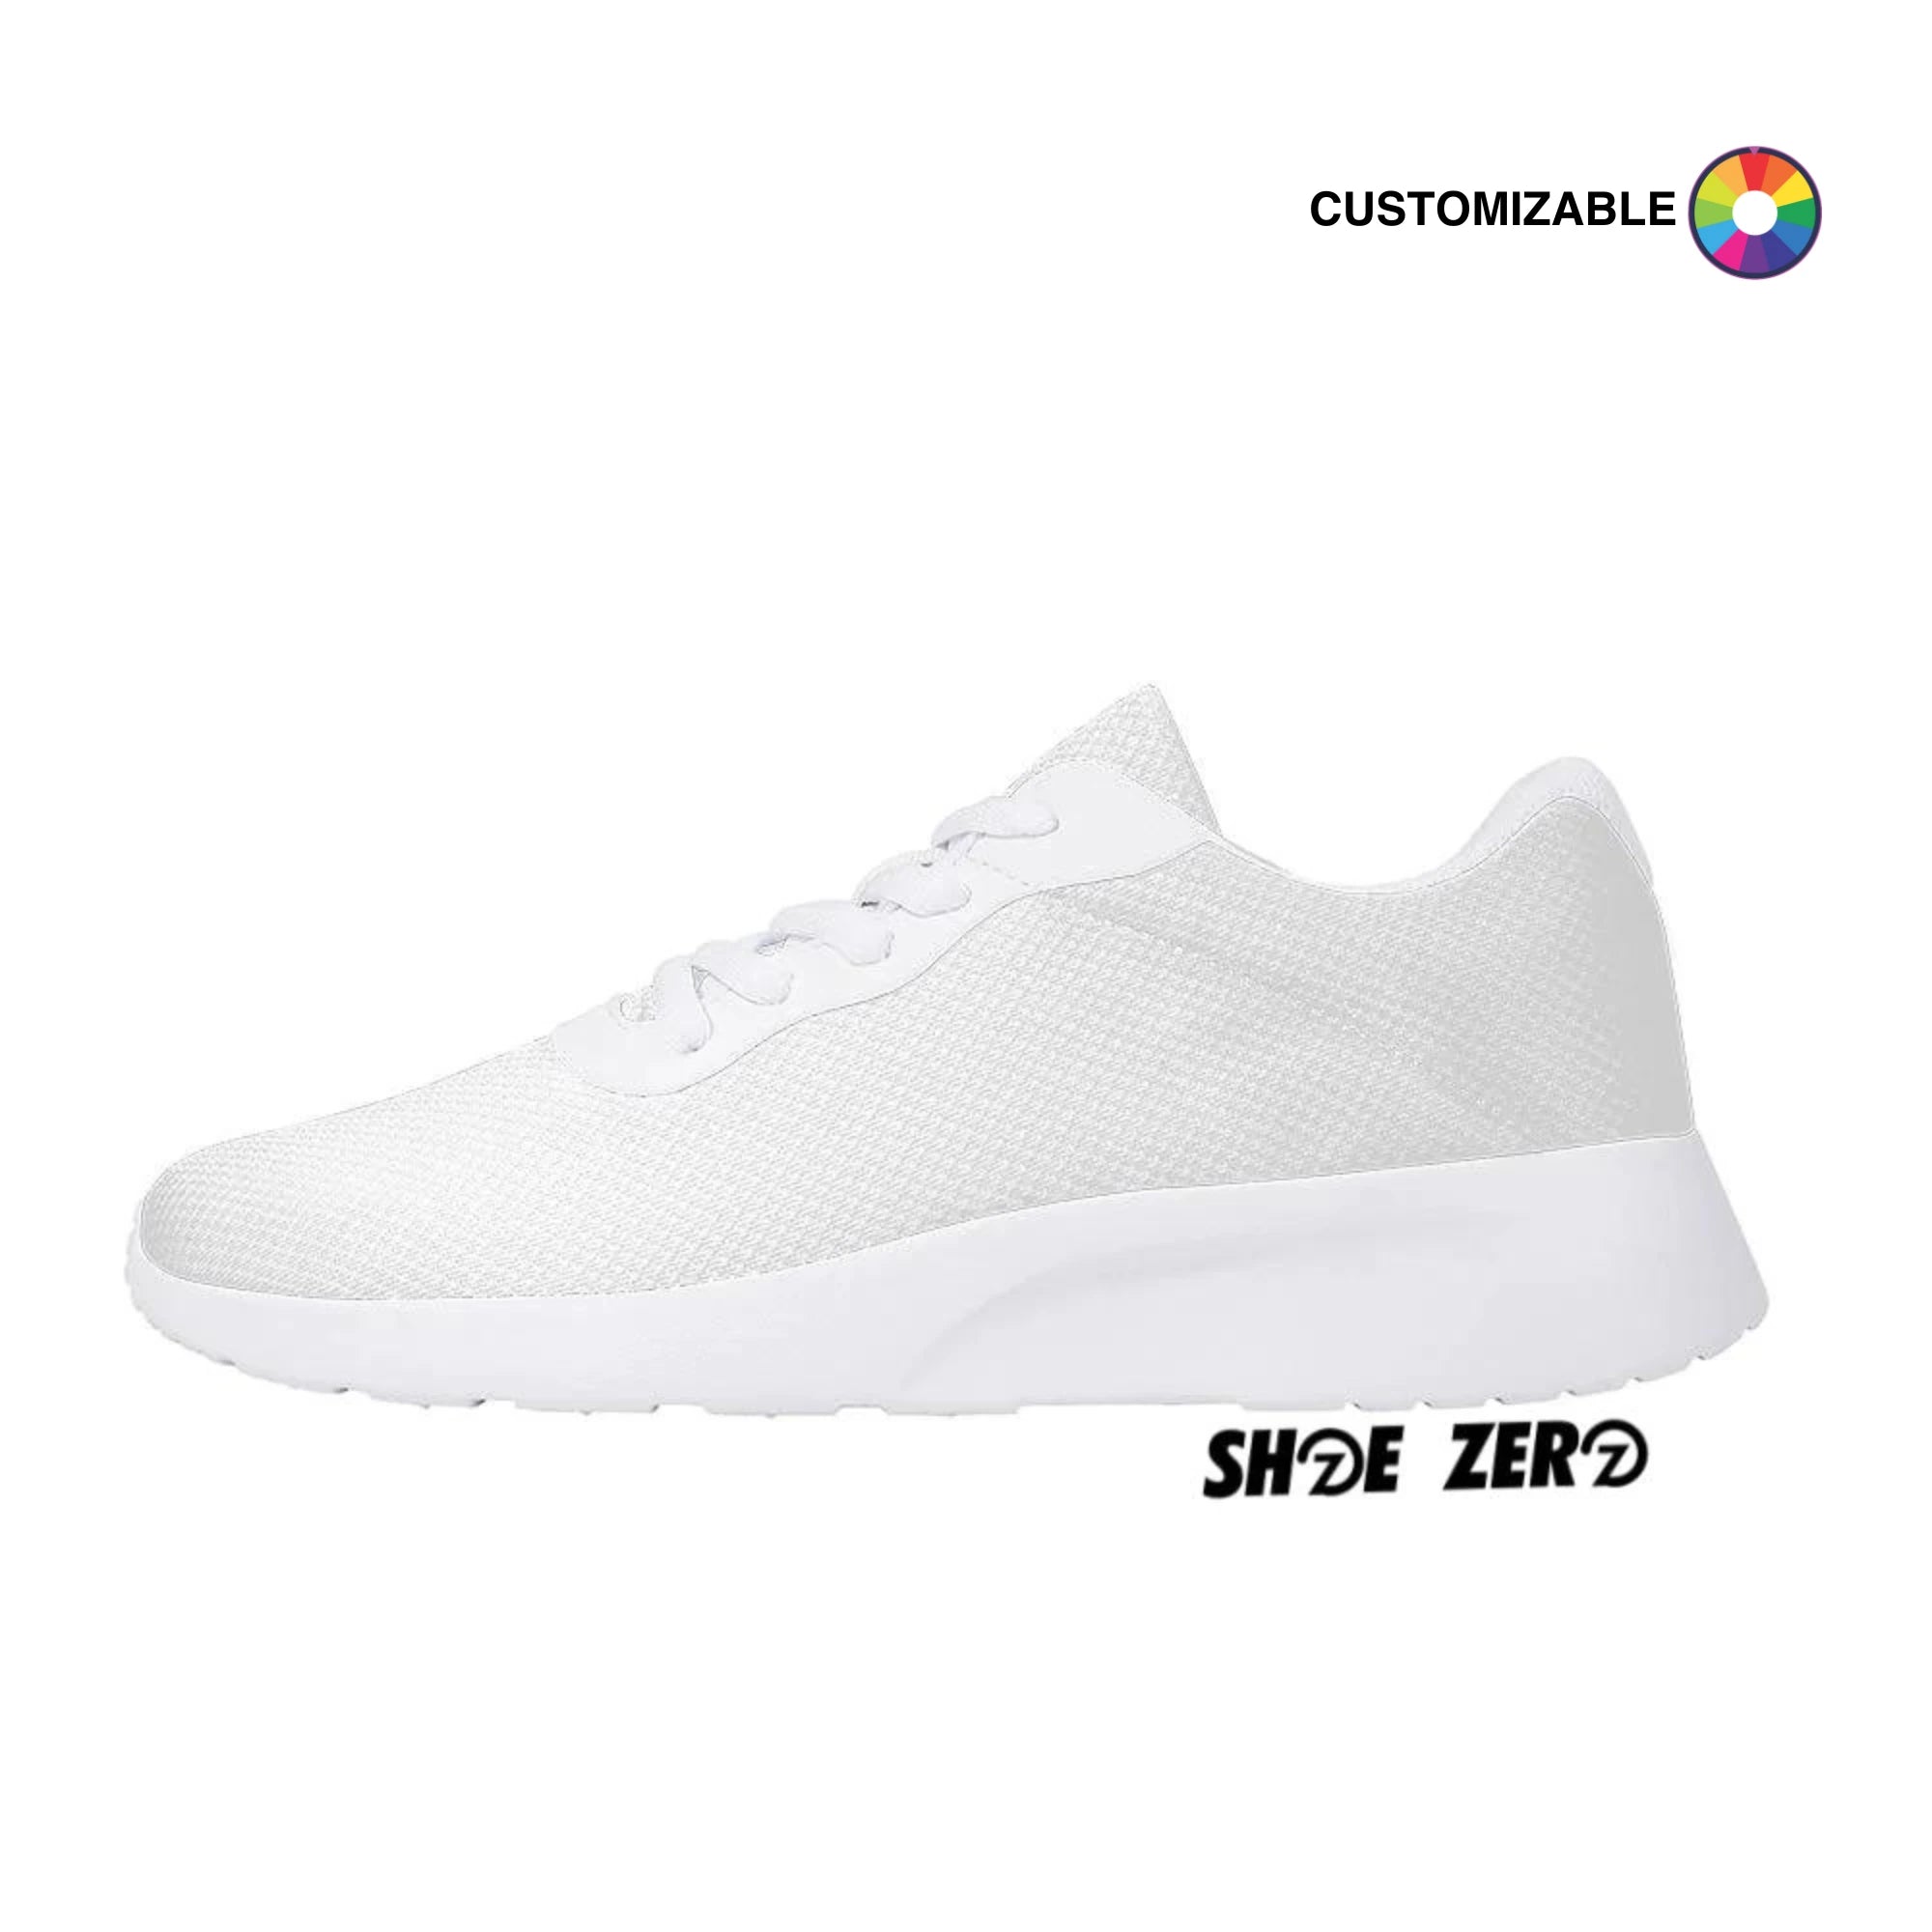 Customizable Air Mesh Zero - White| Design your own | Shoe Zero